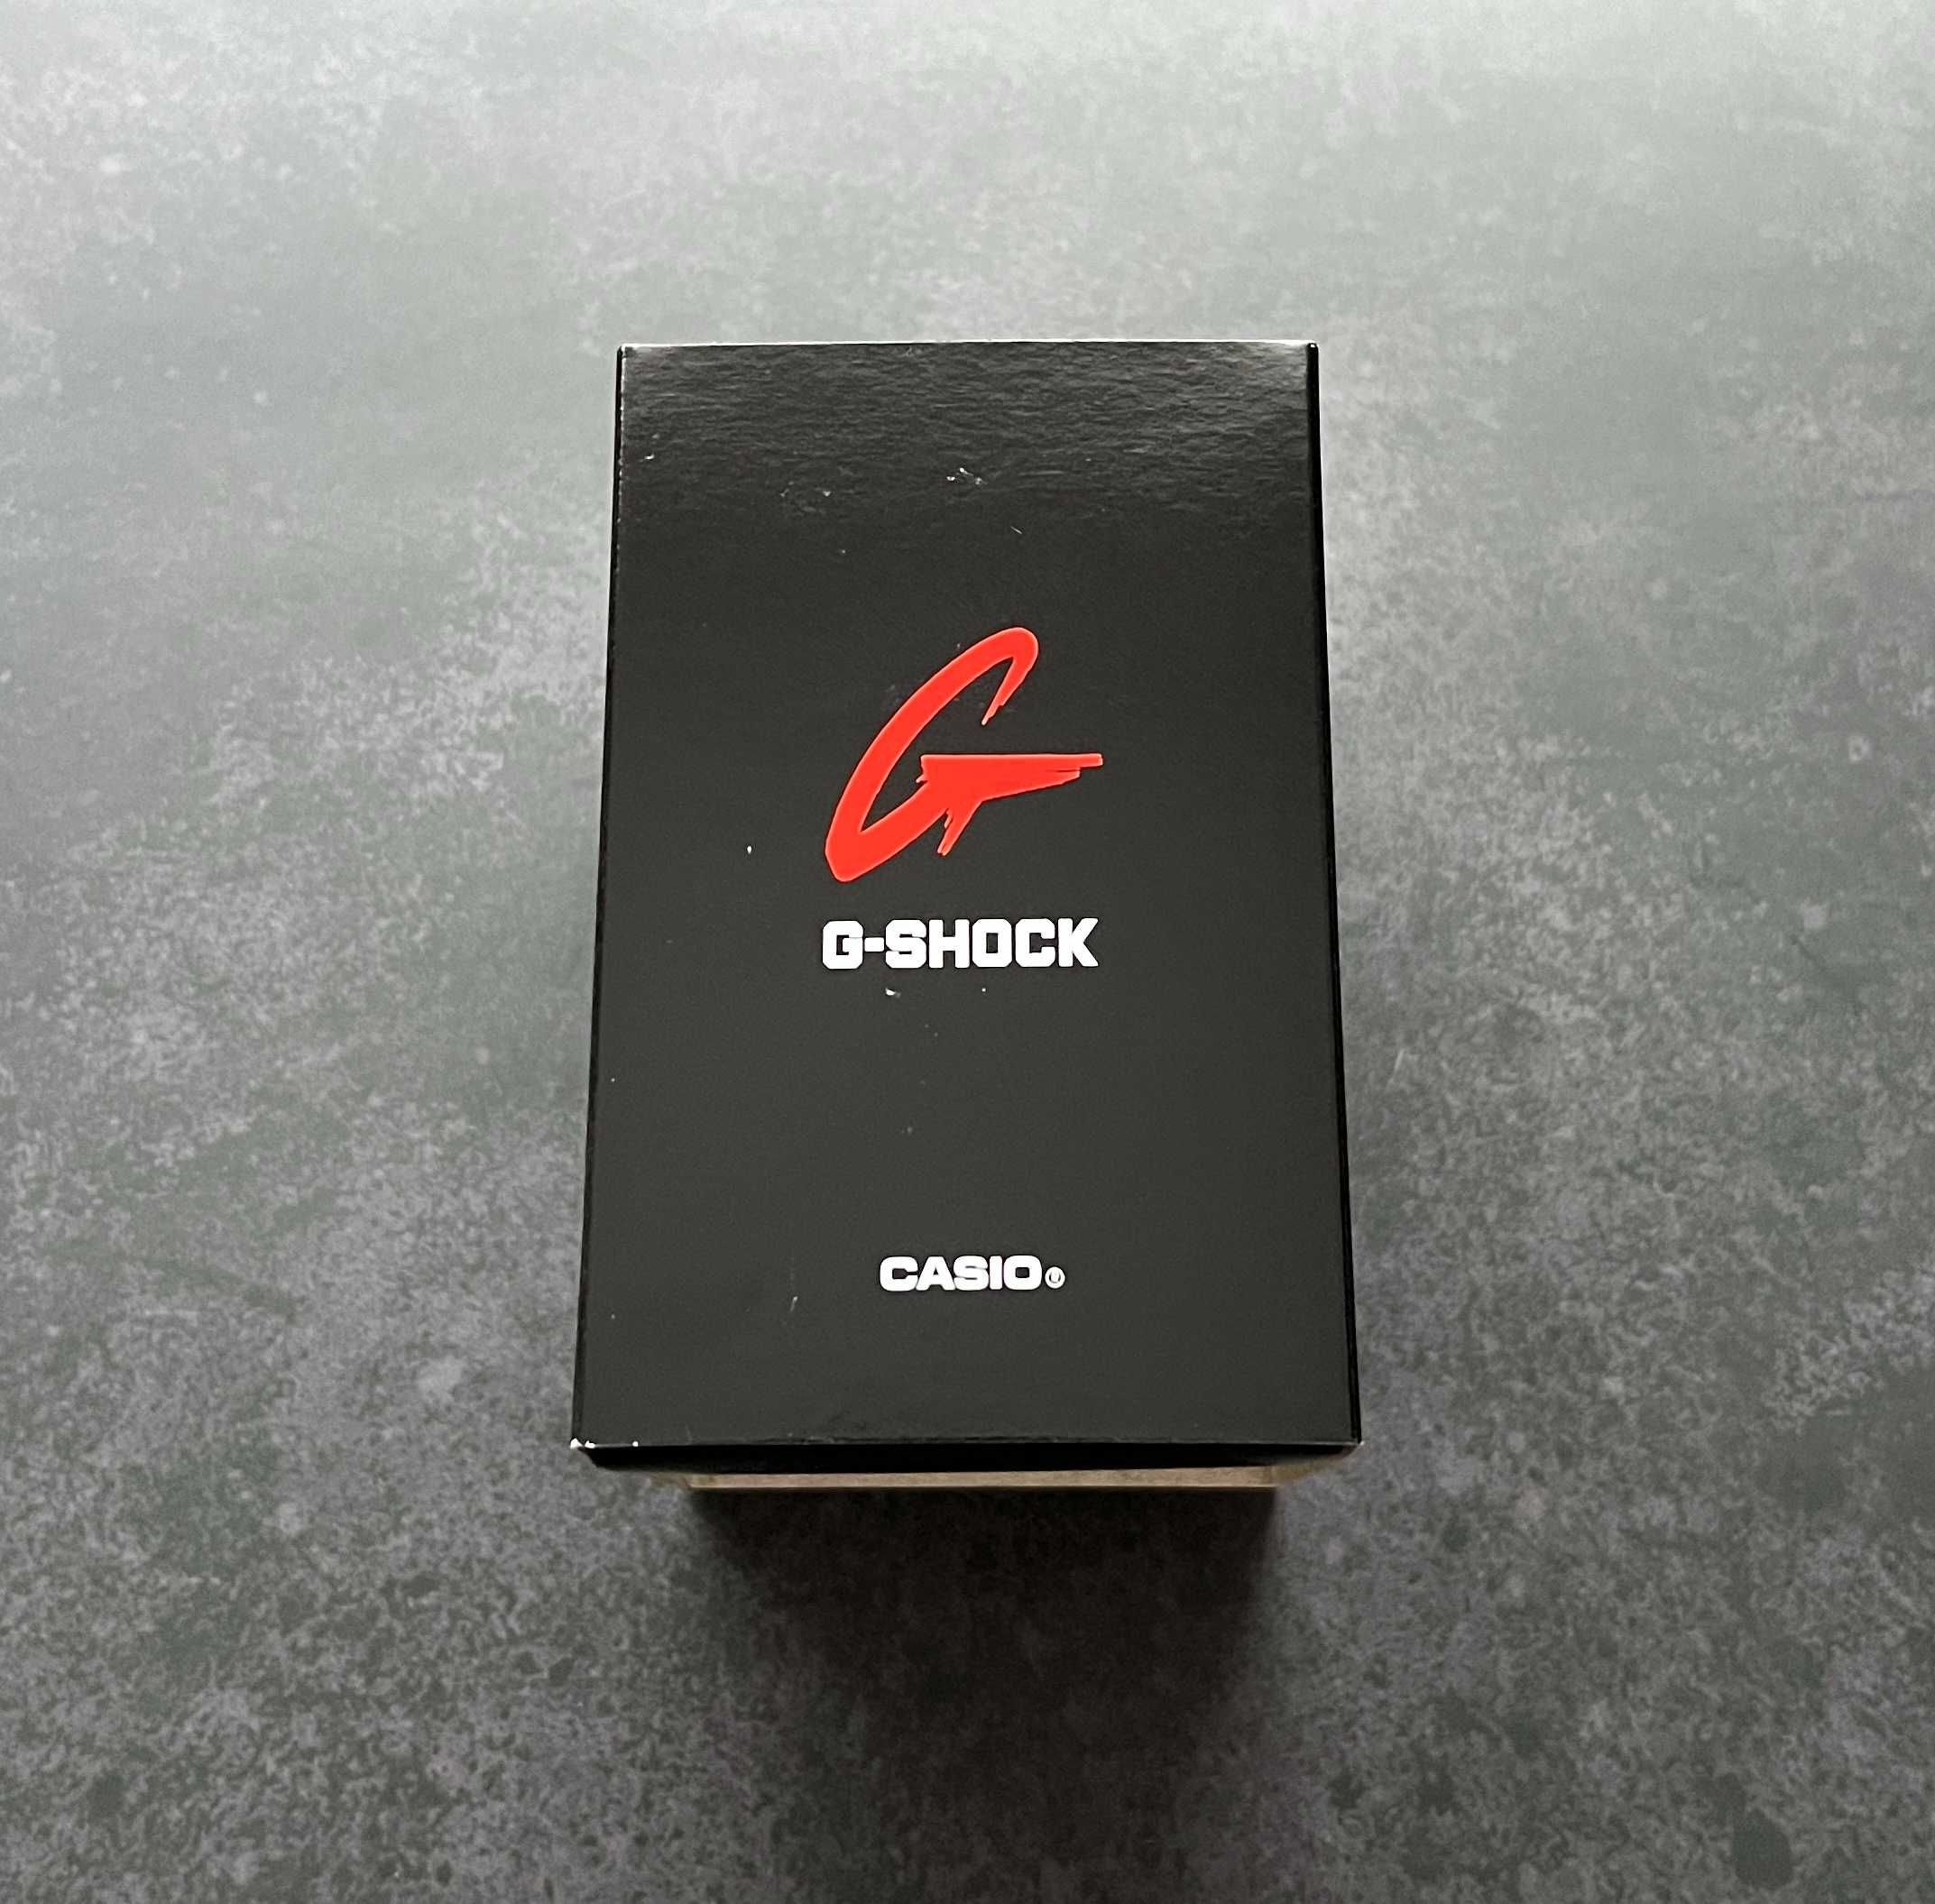 Годинник чоловічий Casio G-Shock GA-100-1A2 новий оригінал